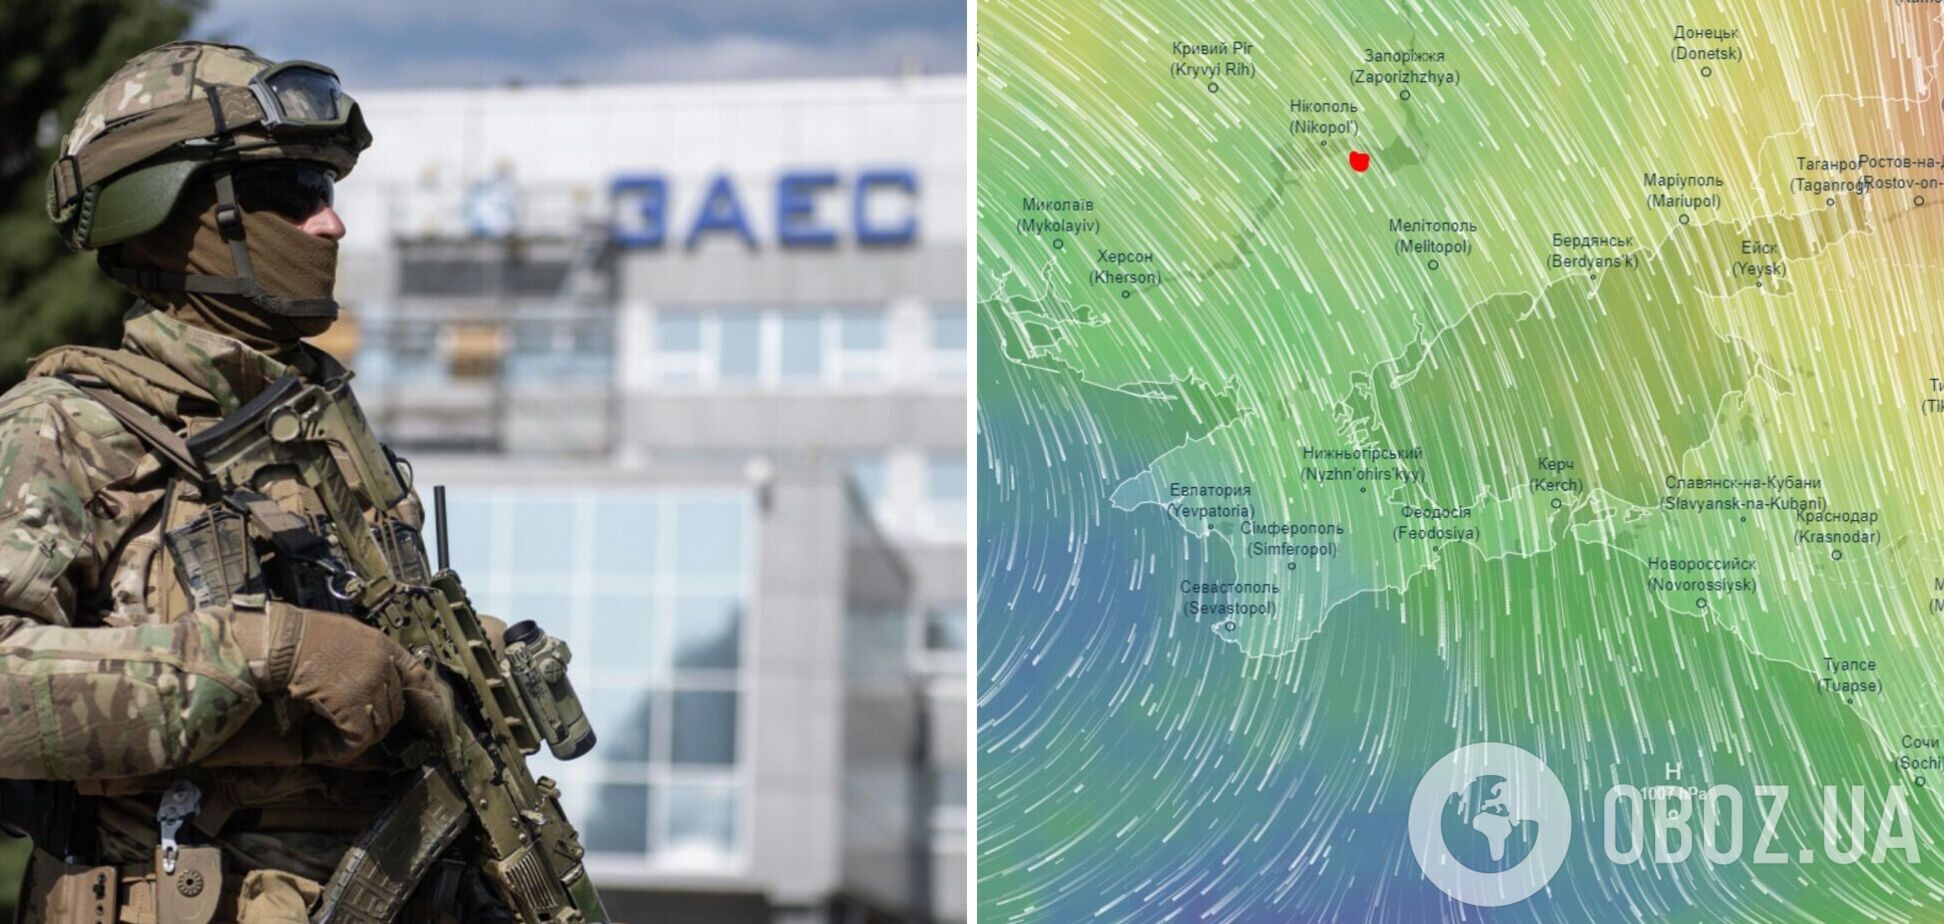 Пострадают Болгария, Румыния и Турция: эксперты дали прогнозы насчет радиоактивного поражения в случае аварии на ЗАЭС. Карта